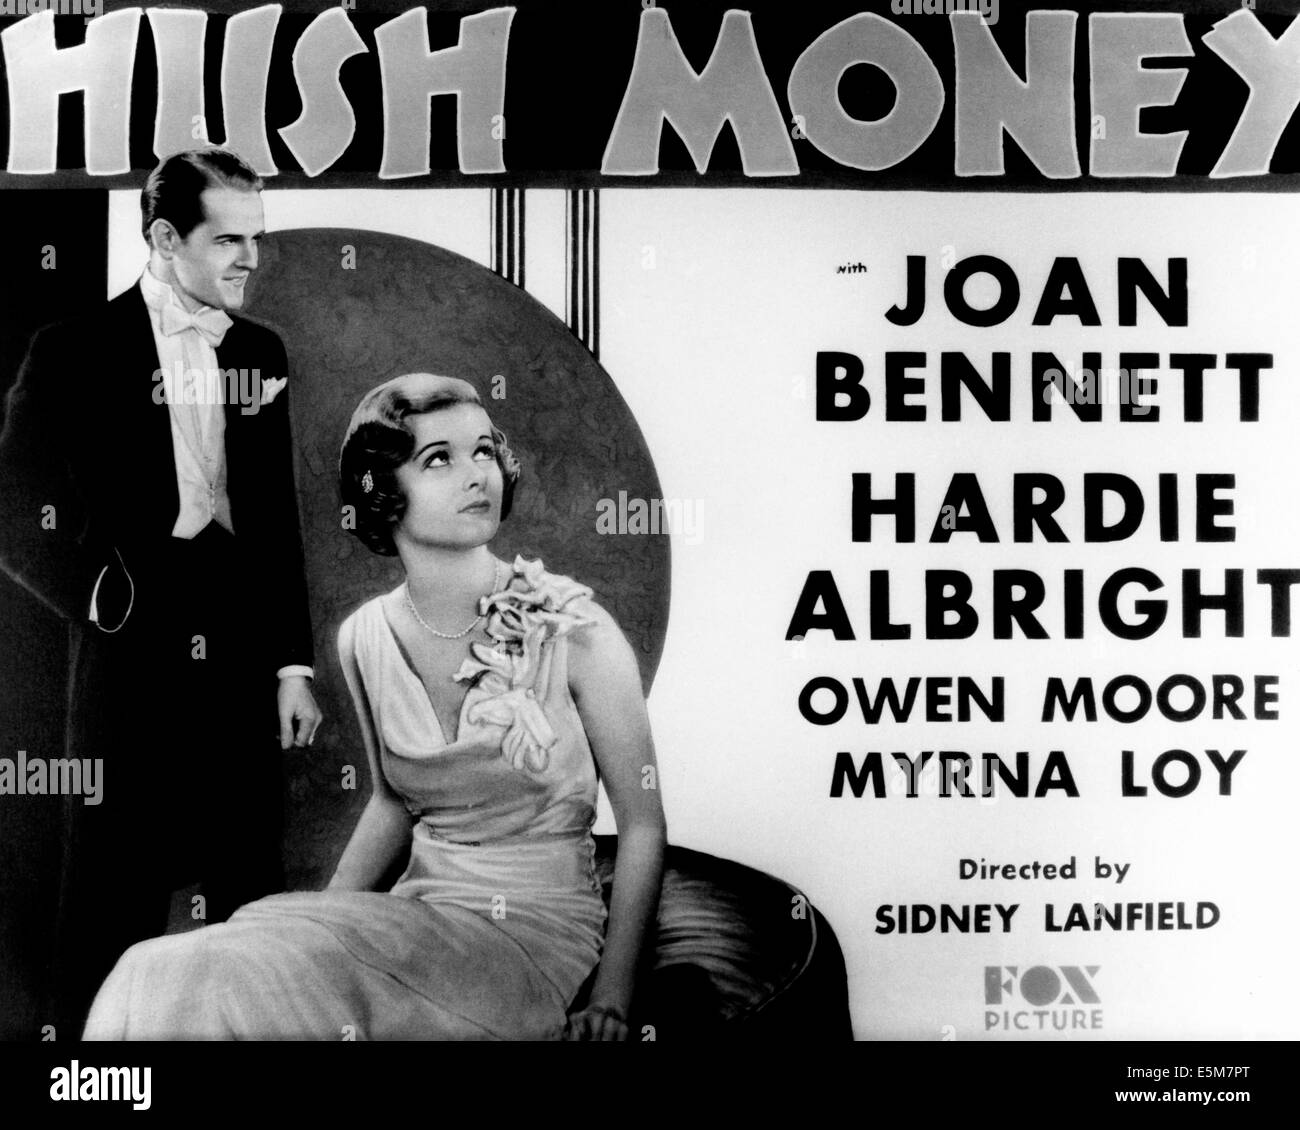 SCHWEIGEGELD, von links: Hardie Albright, Joan Bennett, 1931, TM & Copyright © 20th Century Fox Film Corp./Courtesy Everett Stockfoto